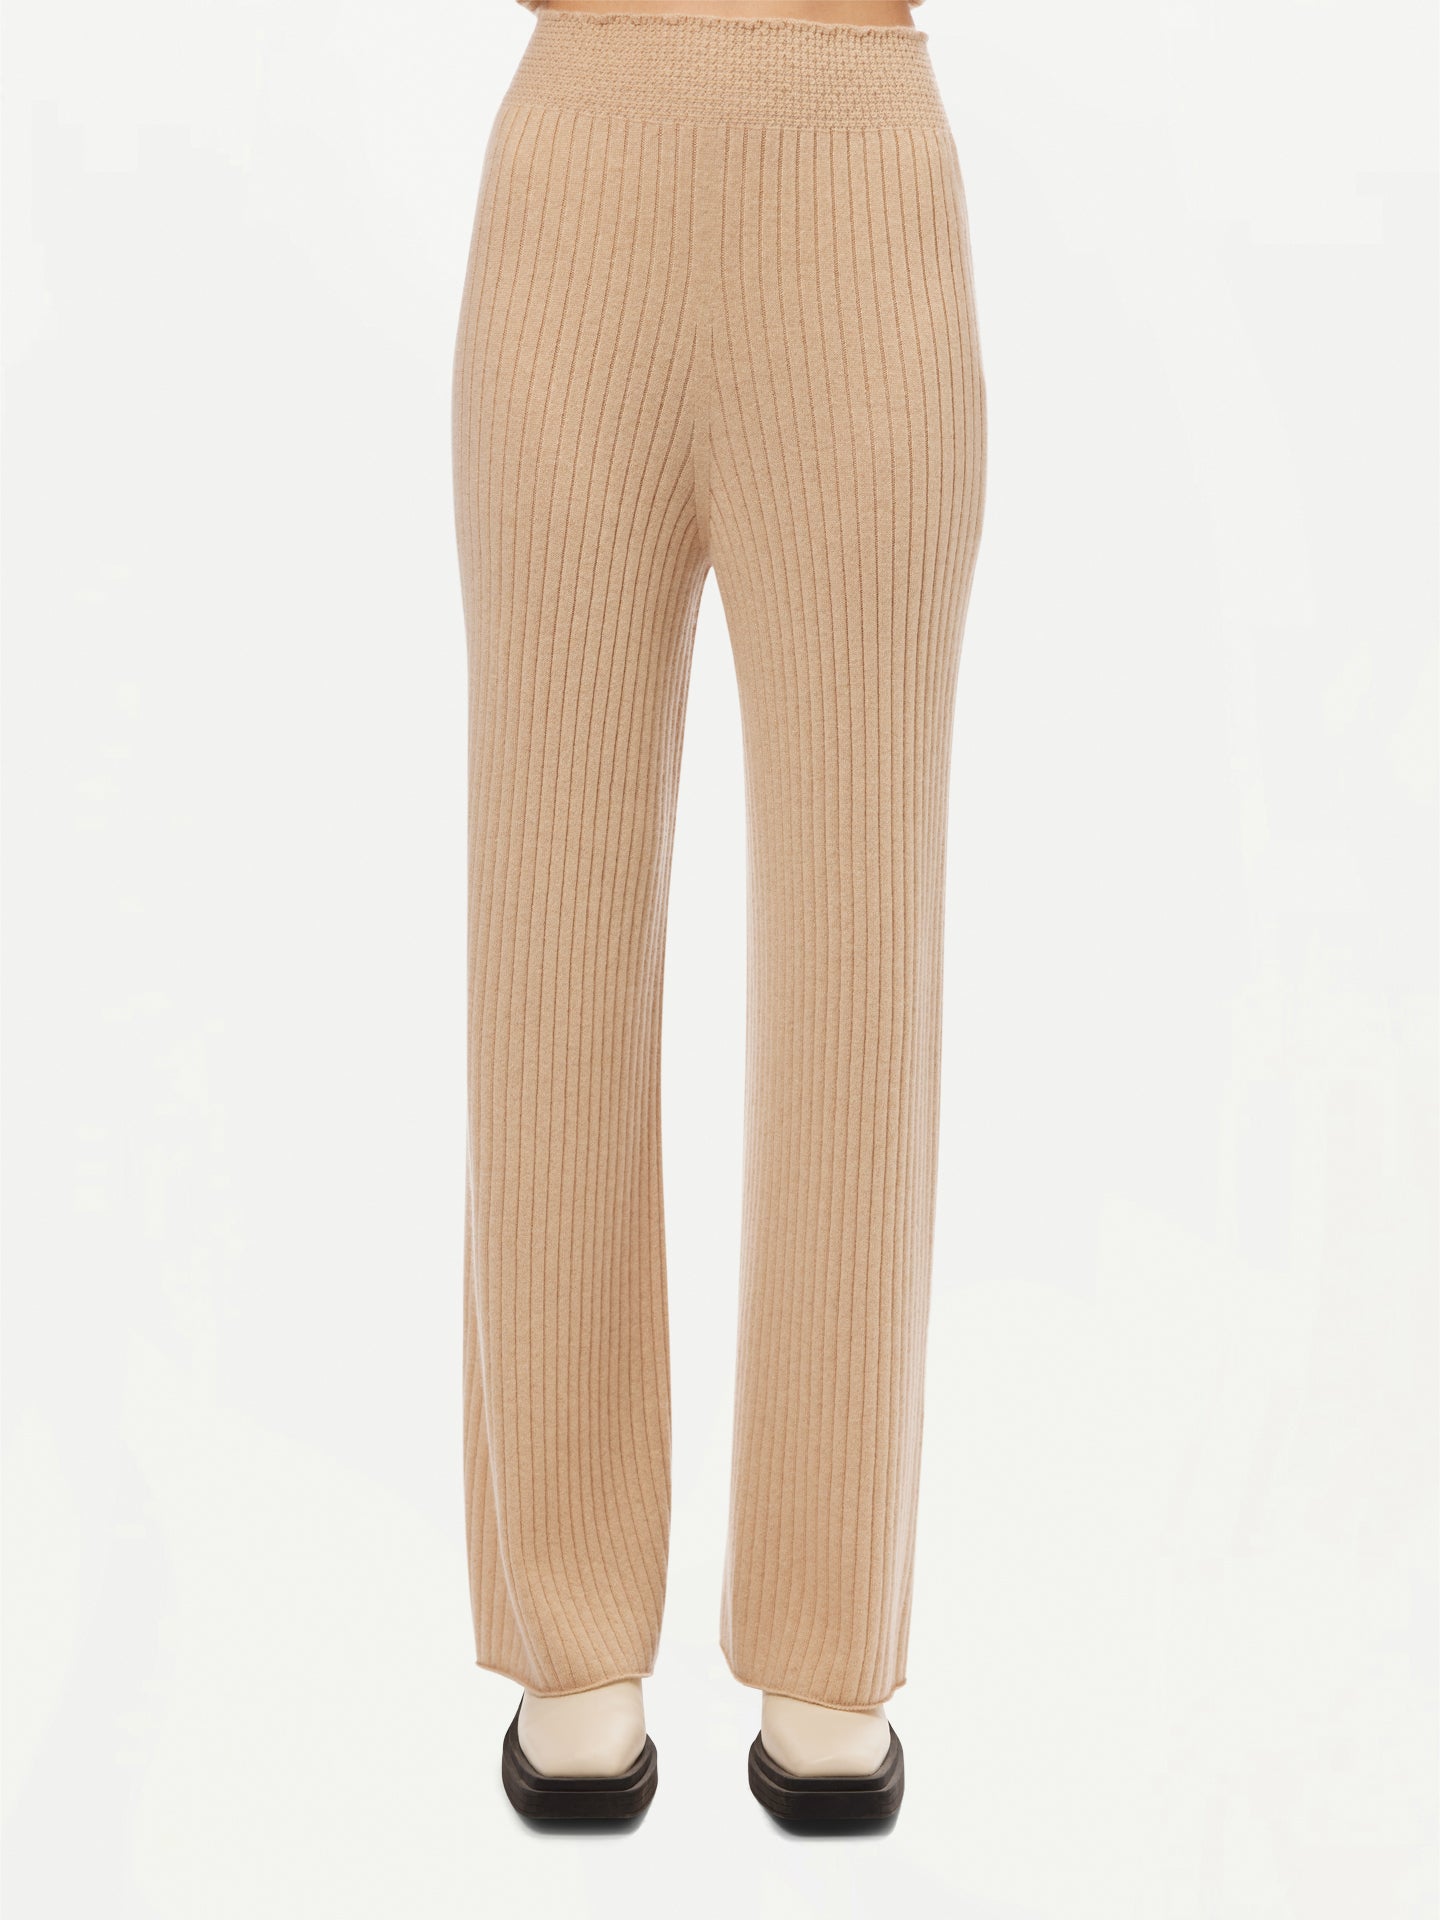 GOBI Cashmere - Wide-Leg Cashmere Pants - 3D-Knit Collection